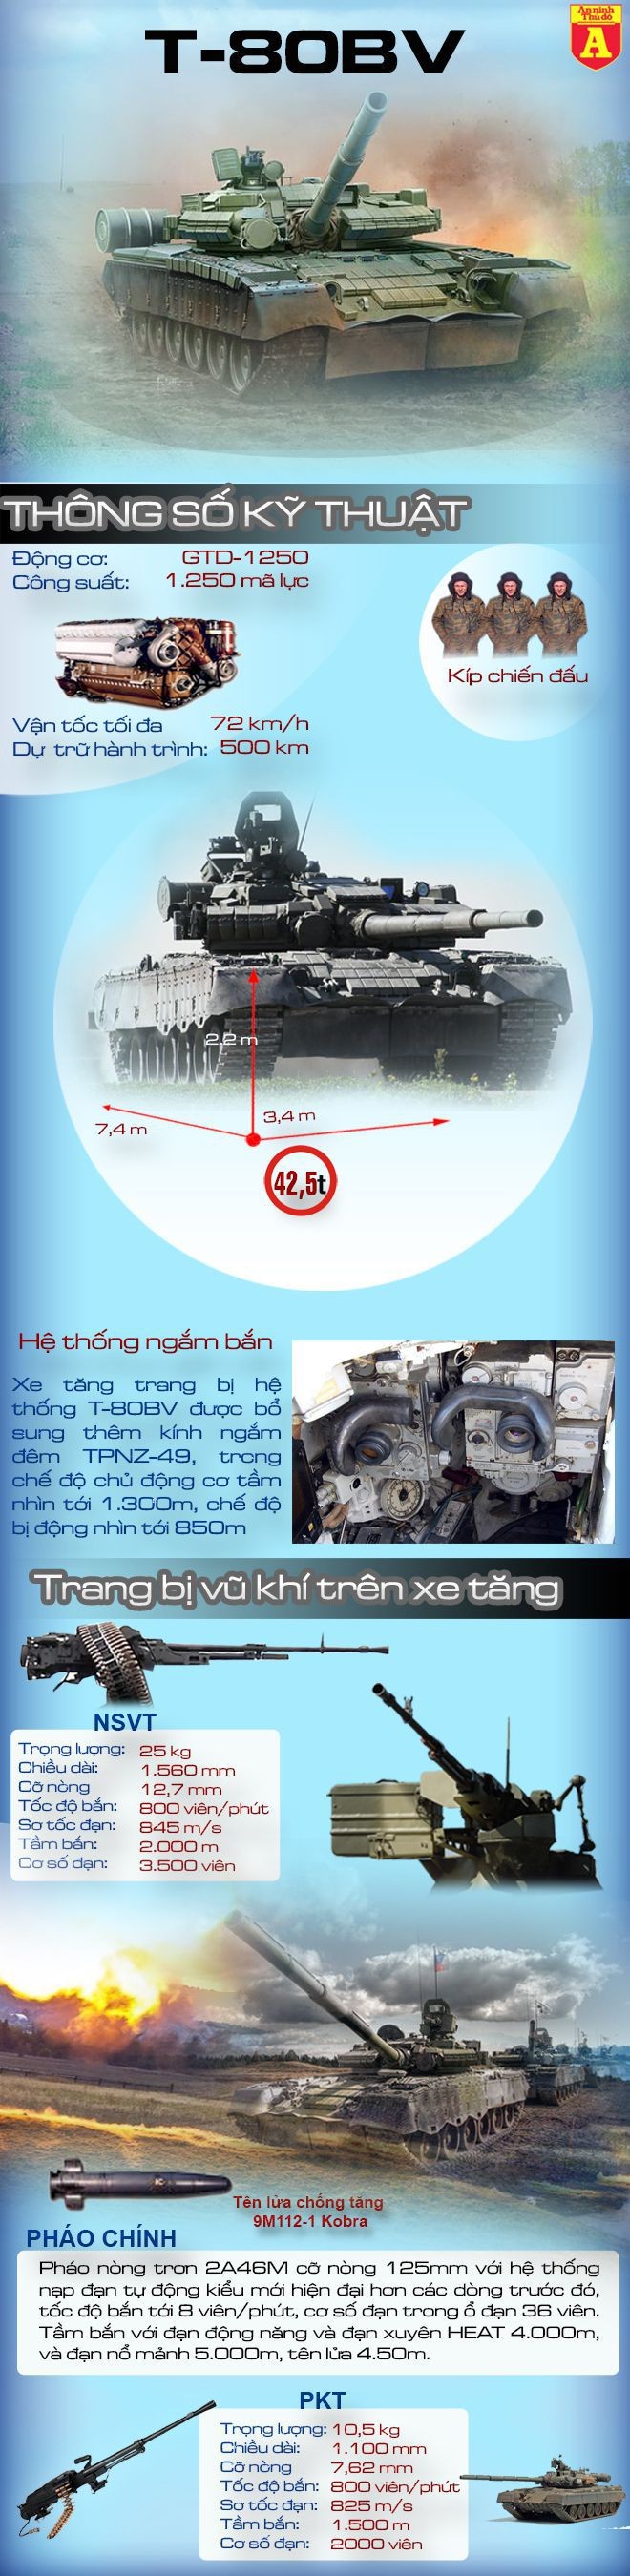 [Infographic] T-80BV sức mạnh của quái thú trở lại trong lục quân Nga